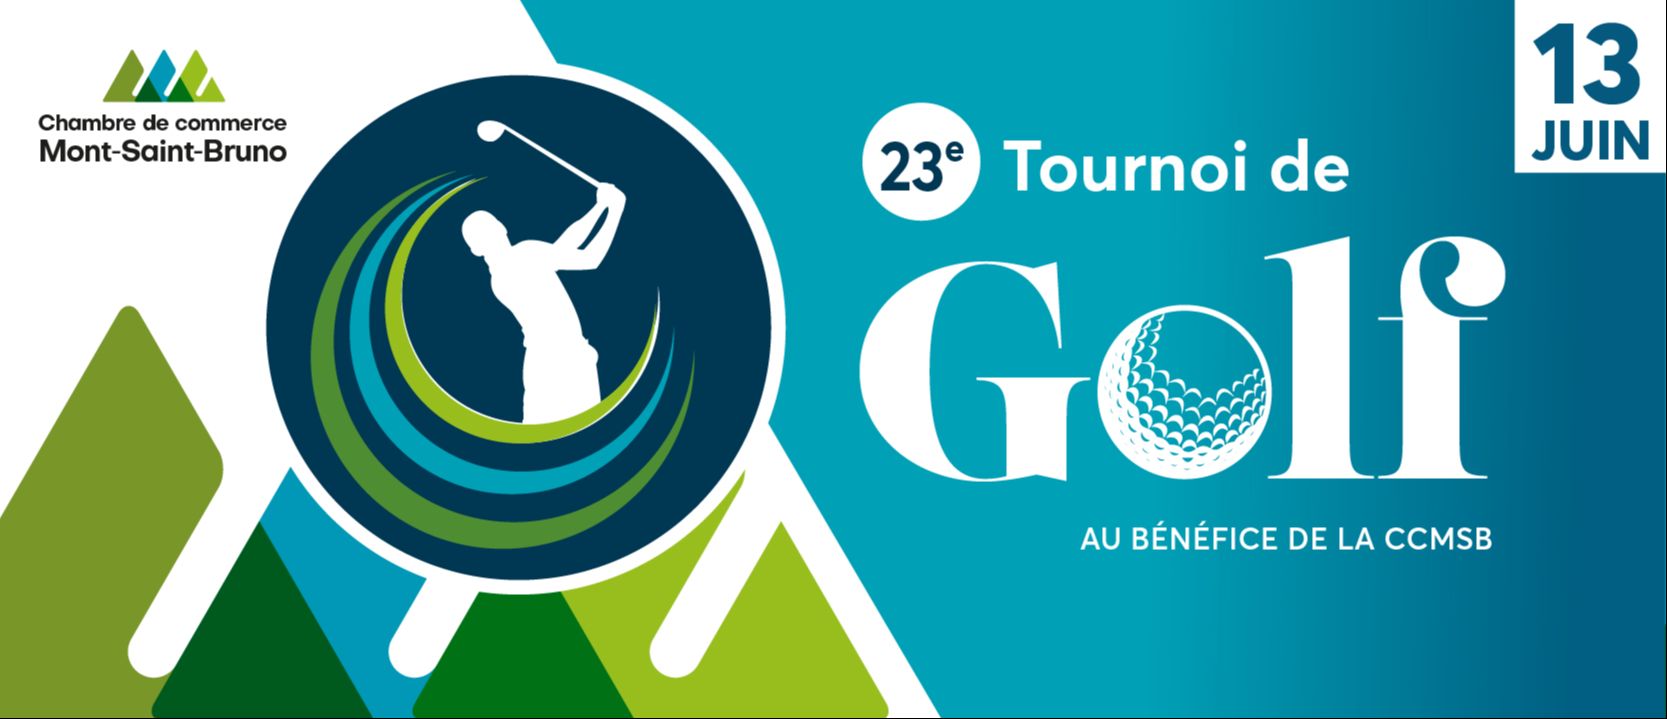 23e édition tournoi de golf